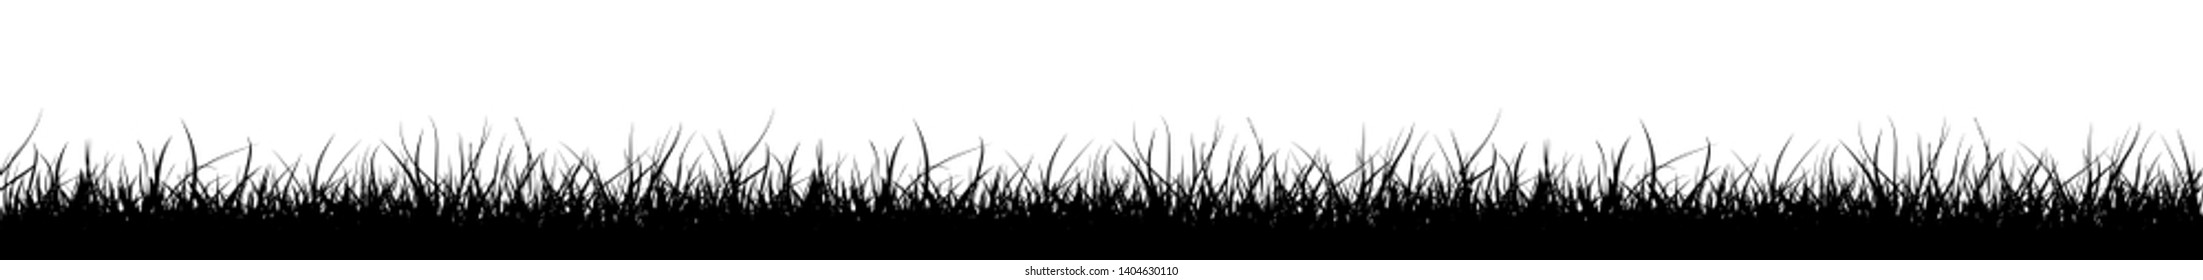 Grass Line